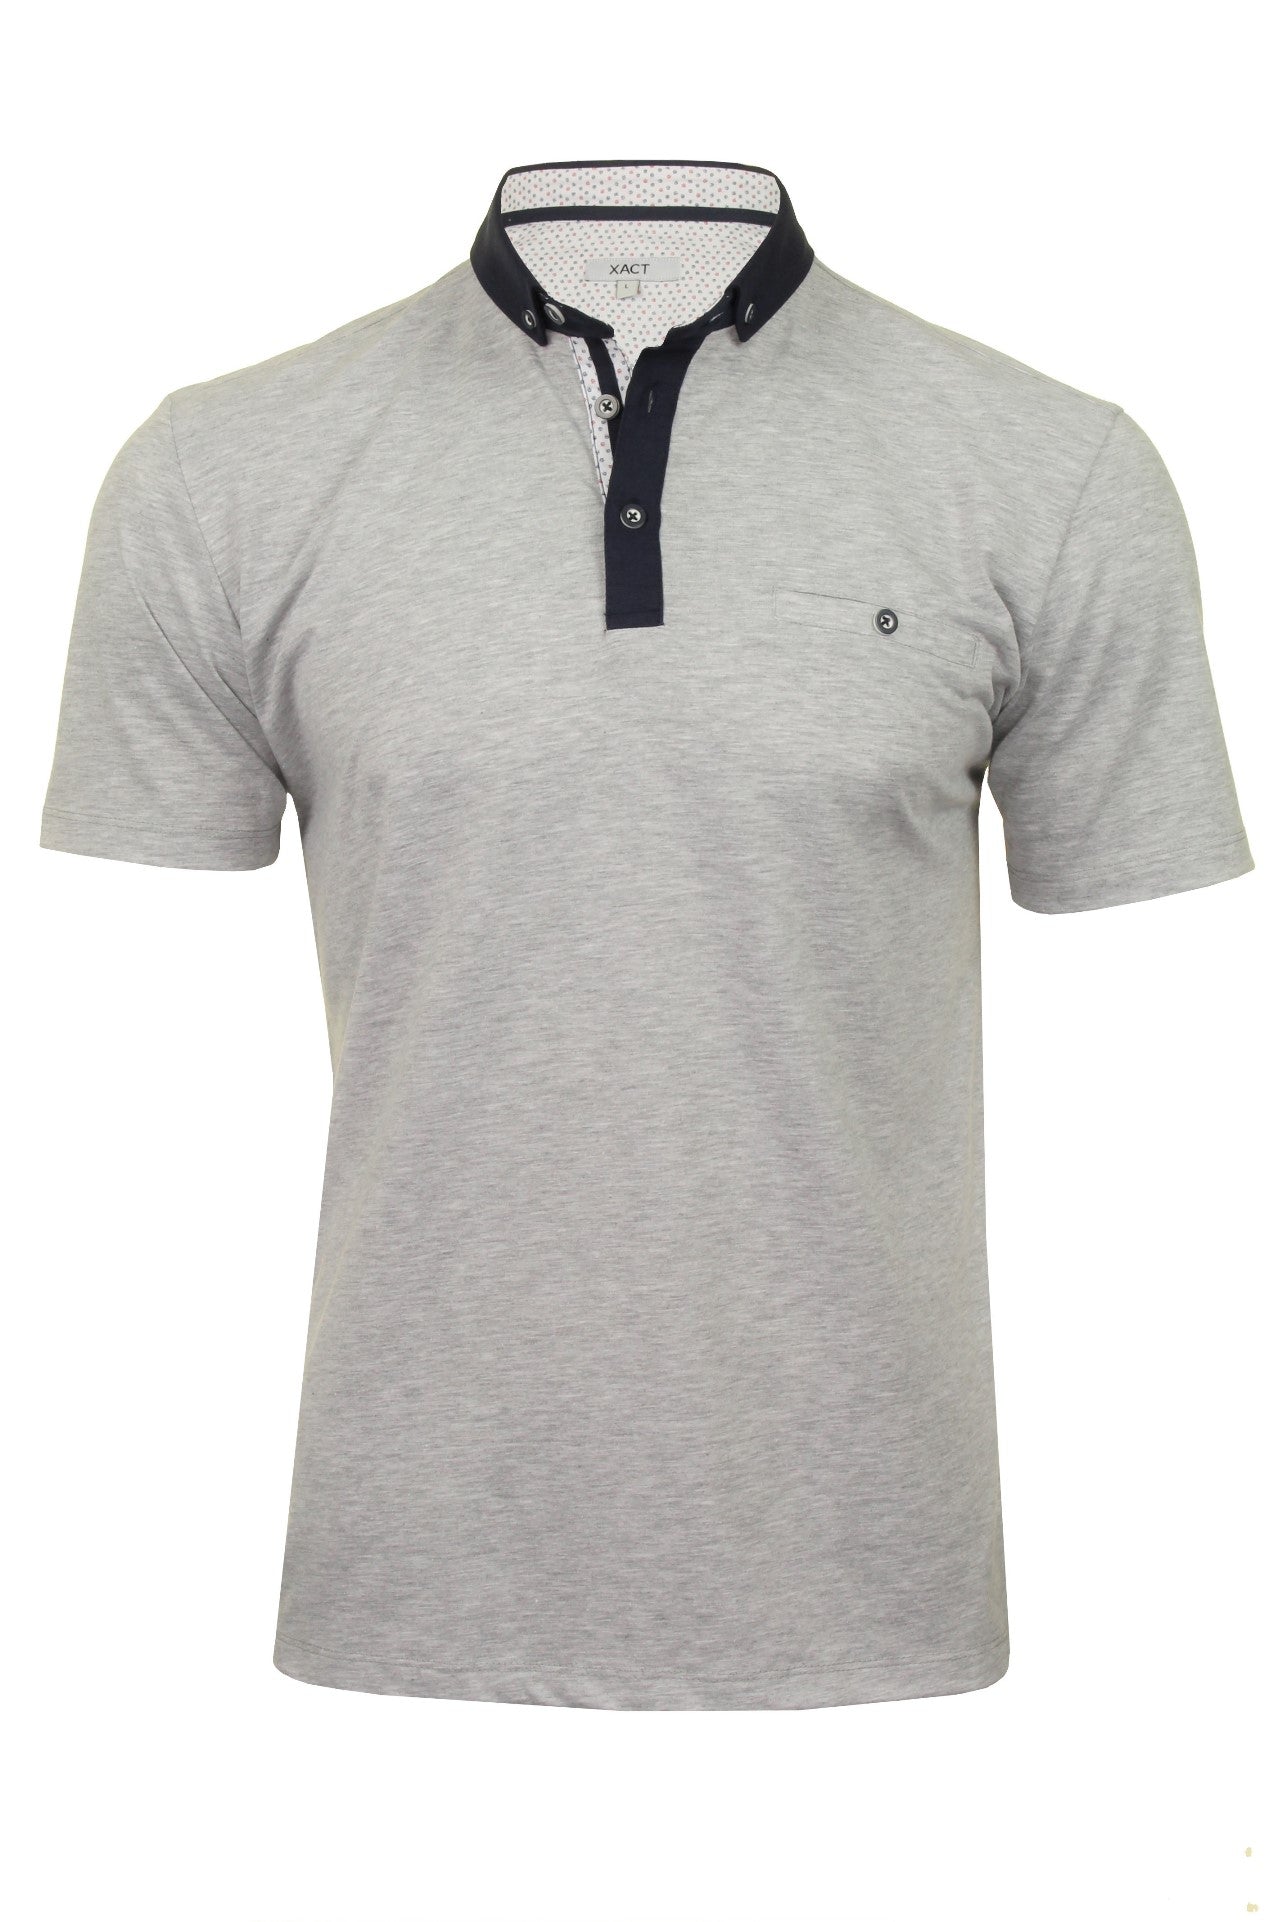 Xact Mens Polo T-Shirt - Short Sleeved-Main Image